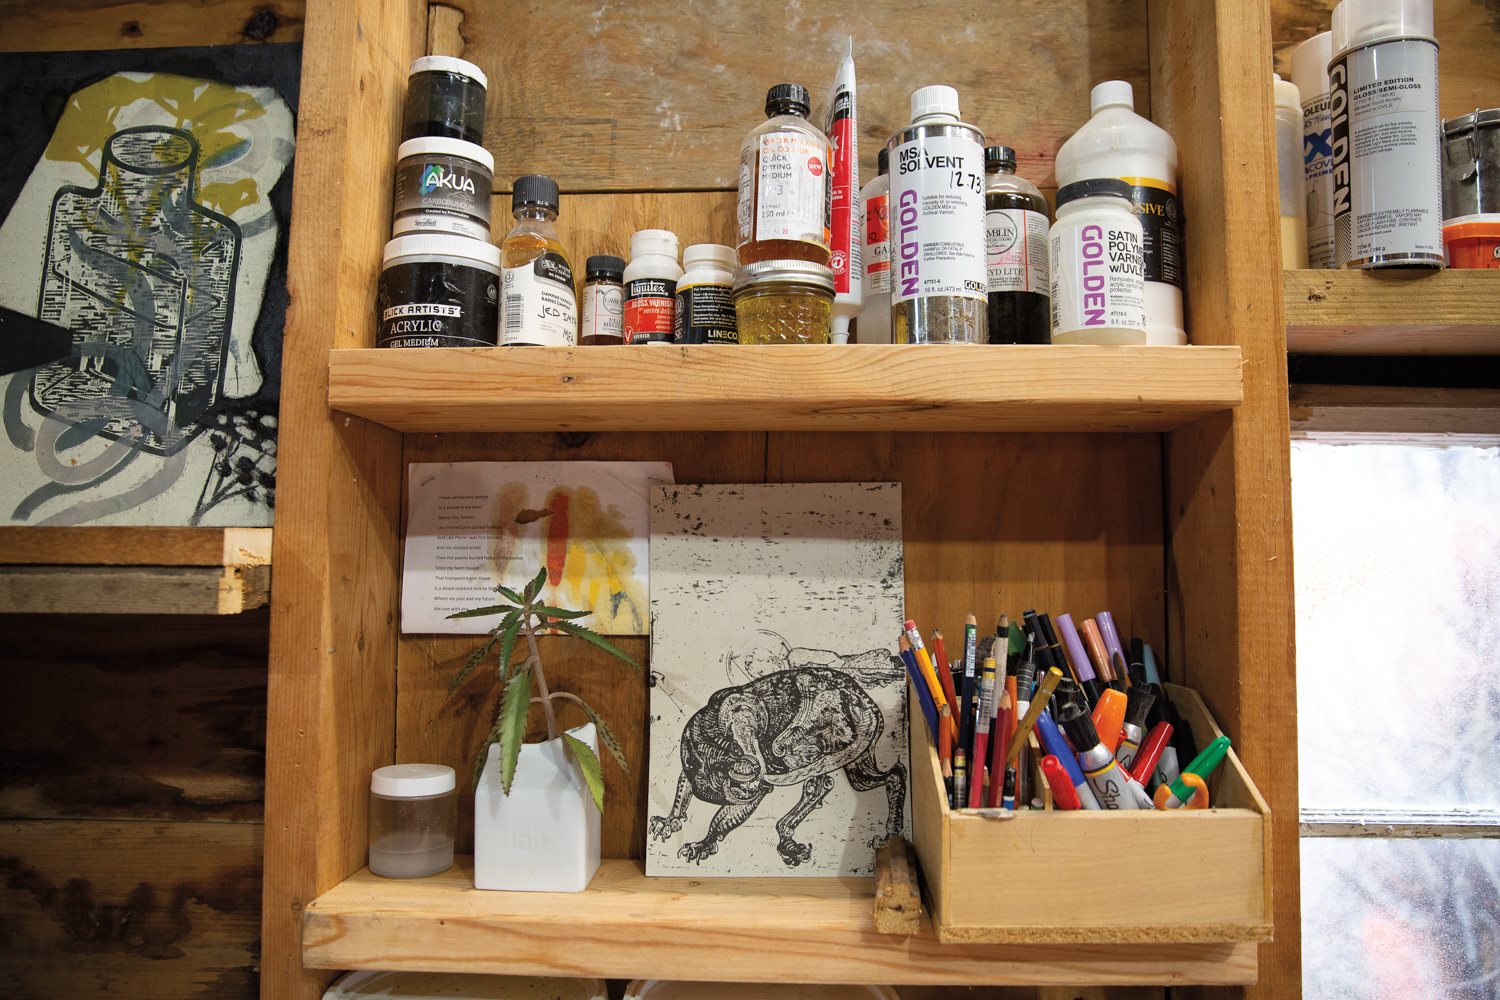 art supplies on a shelf